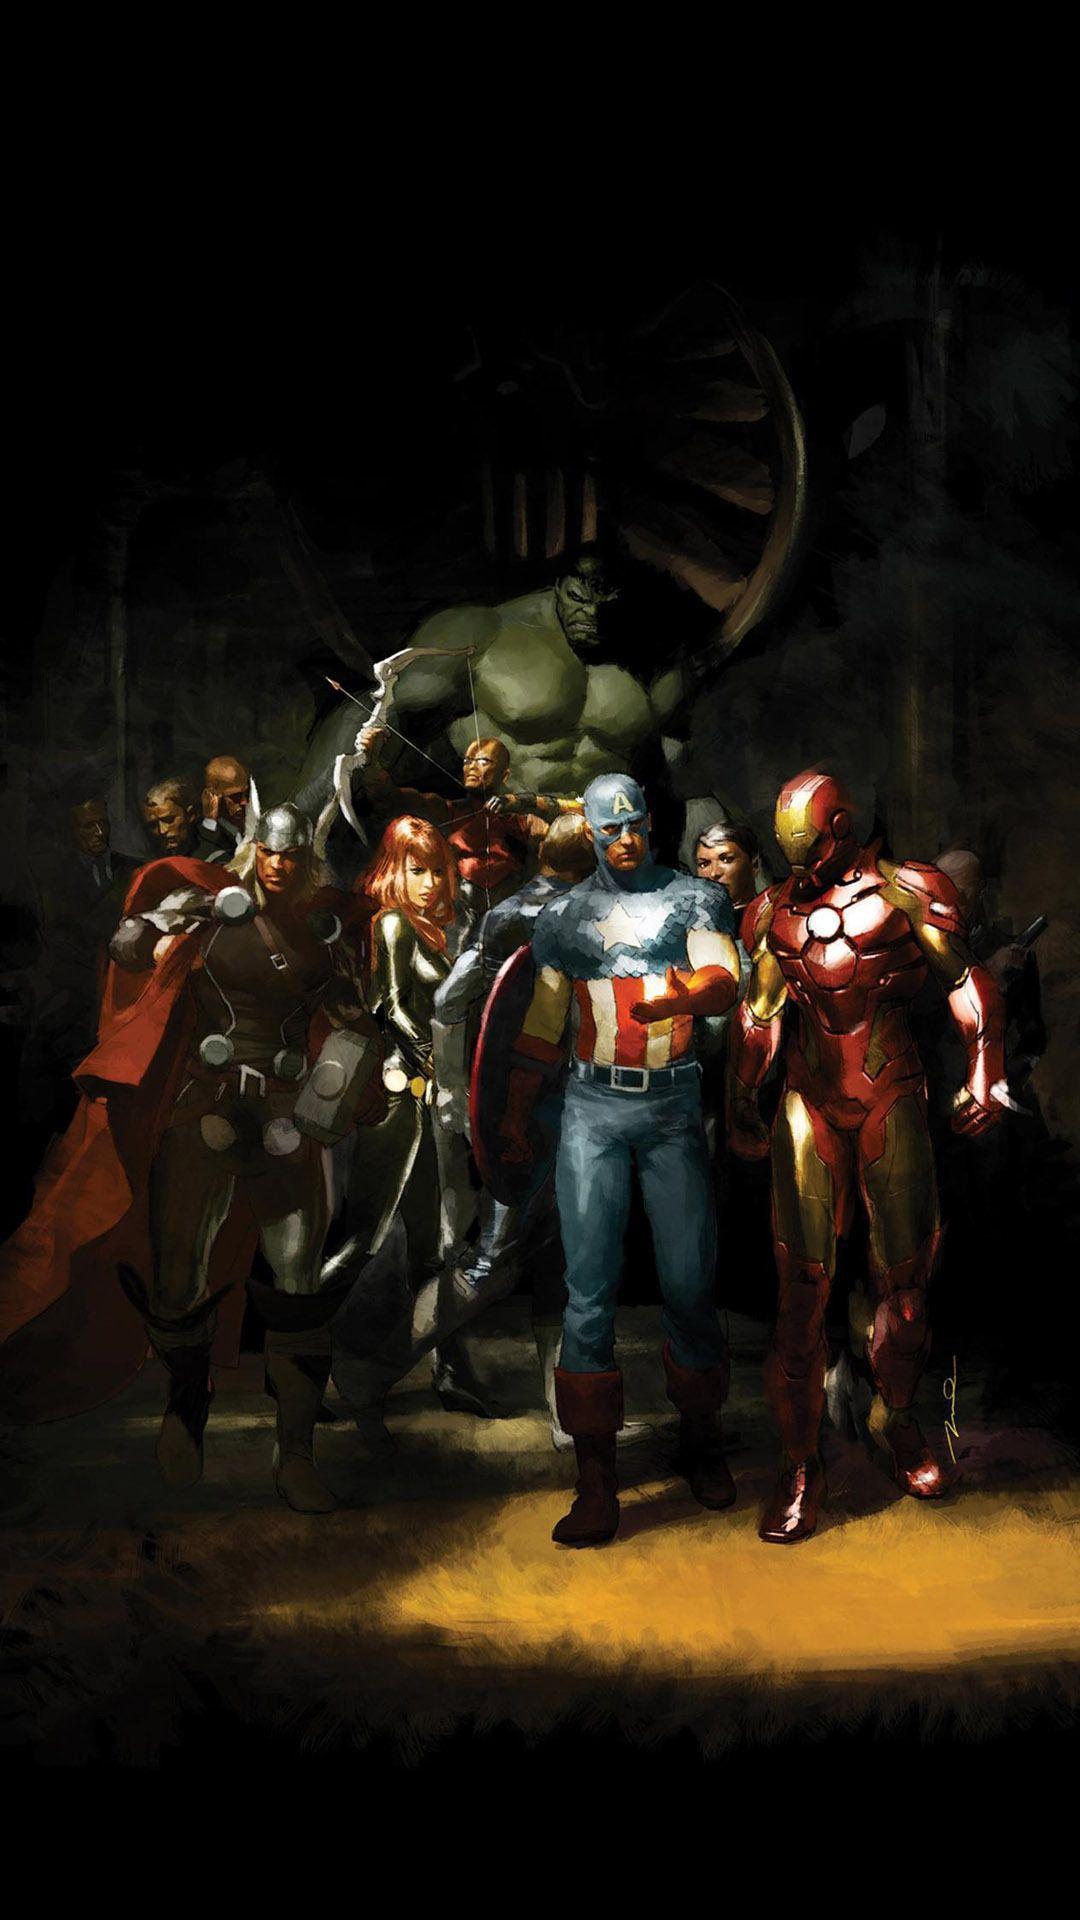 Tự thưởng cho mình với hình nền Avengers cho điện thoại! Với hình ảnh đầy mạnh mẽ và sắc nét, bạn sẽ cảm thấy như đang sở hữu những siêu năng lực mạnh mẽ nhất của những siêu anh hùng. Nếu bạn là một fan của dòng phim này, hãy tải và sử dụng hình nền này ngay!